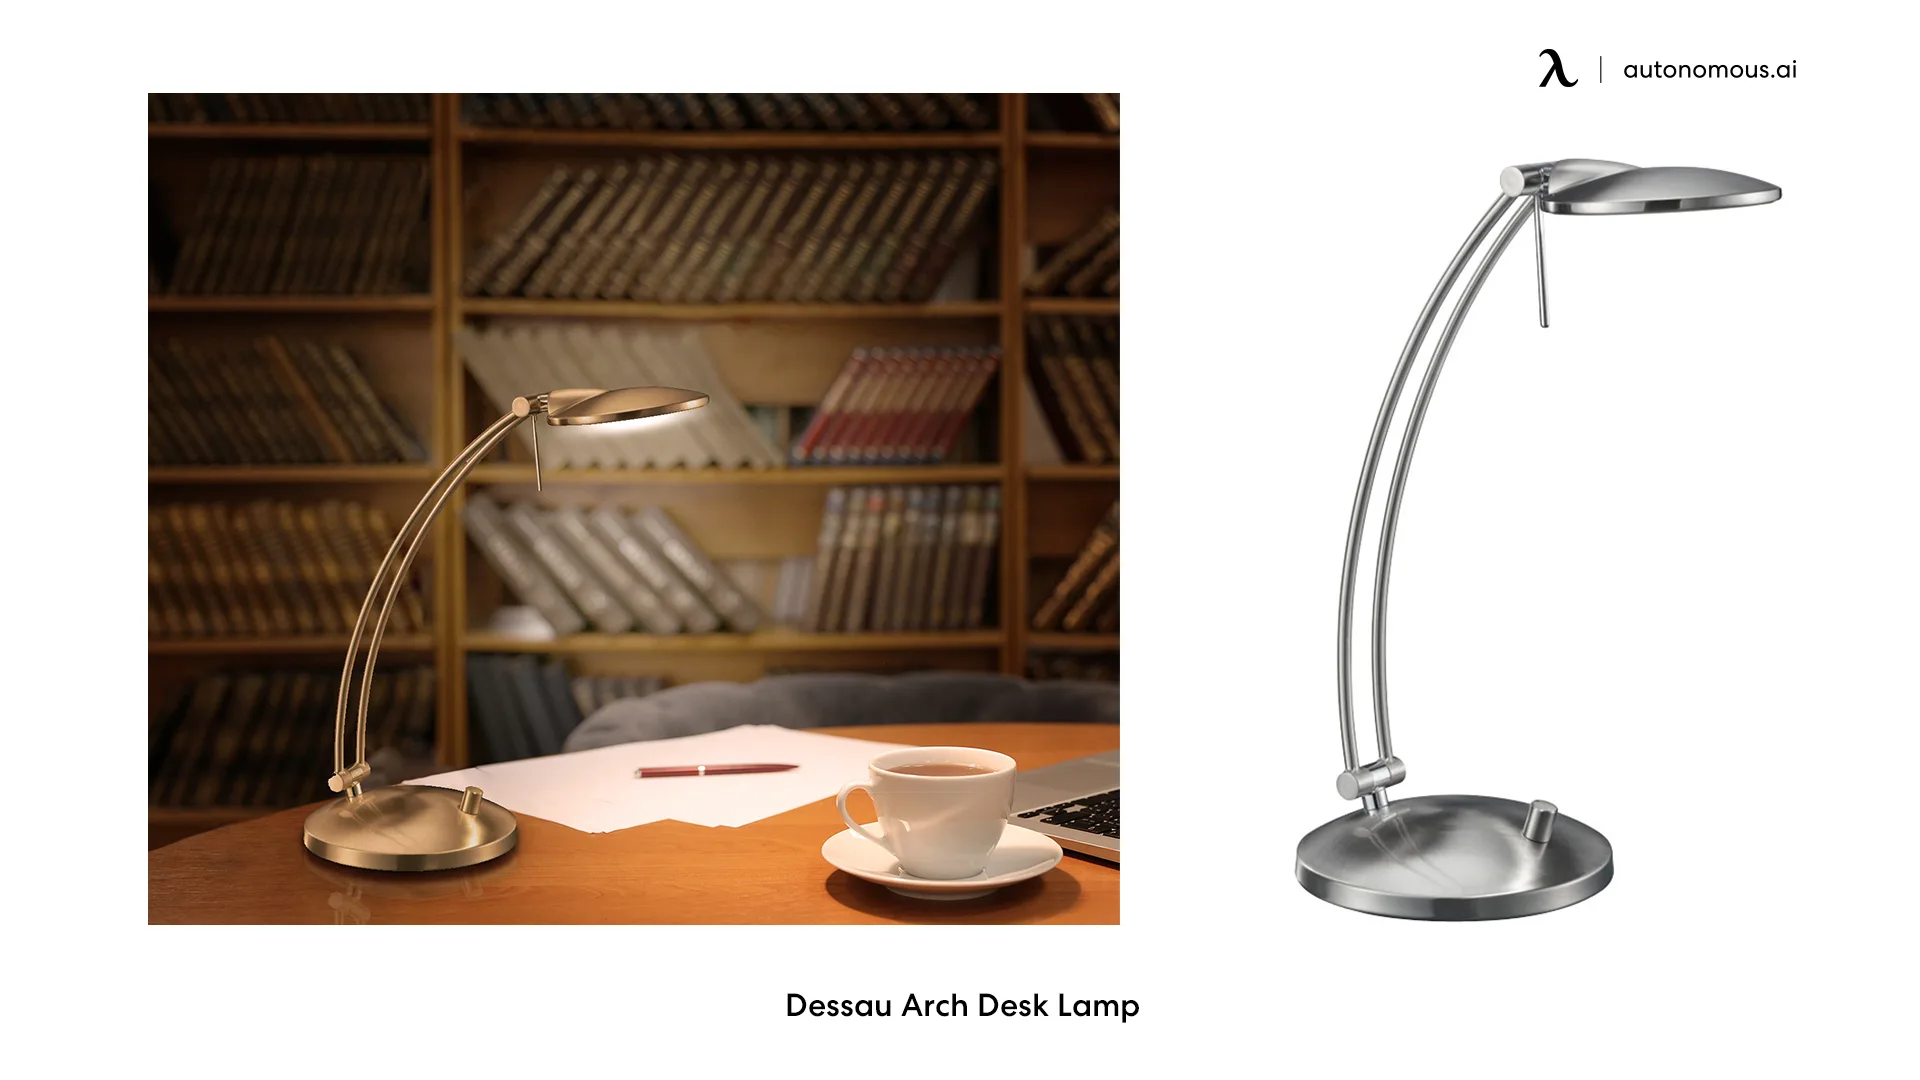 Dessau Arch Desk Lamp